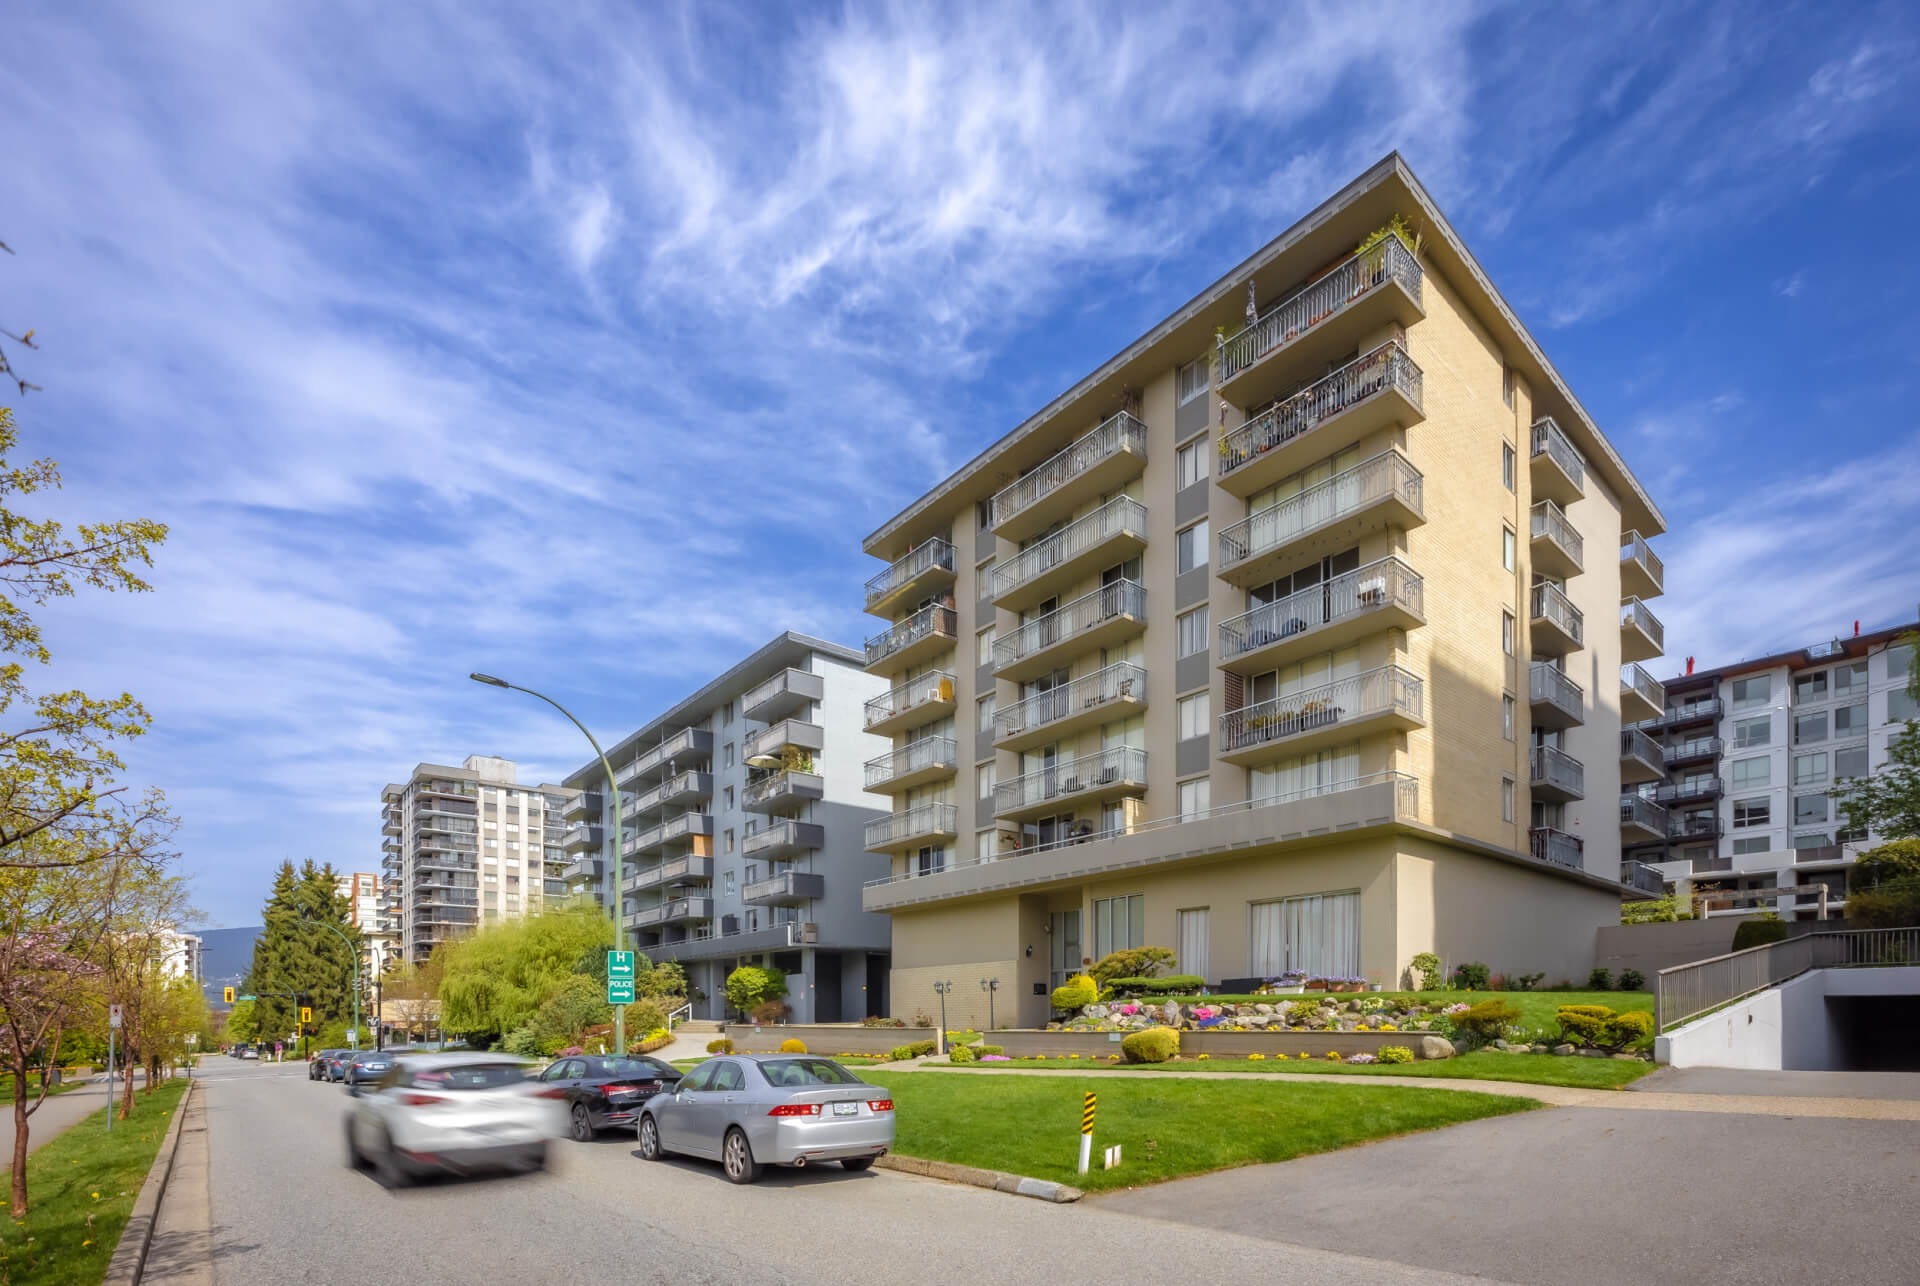 Lee & Associates Facilitates Buyer’s Acquisition of Parkridge Place, a Prime North Vancouver Apartment Building